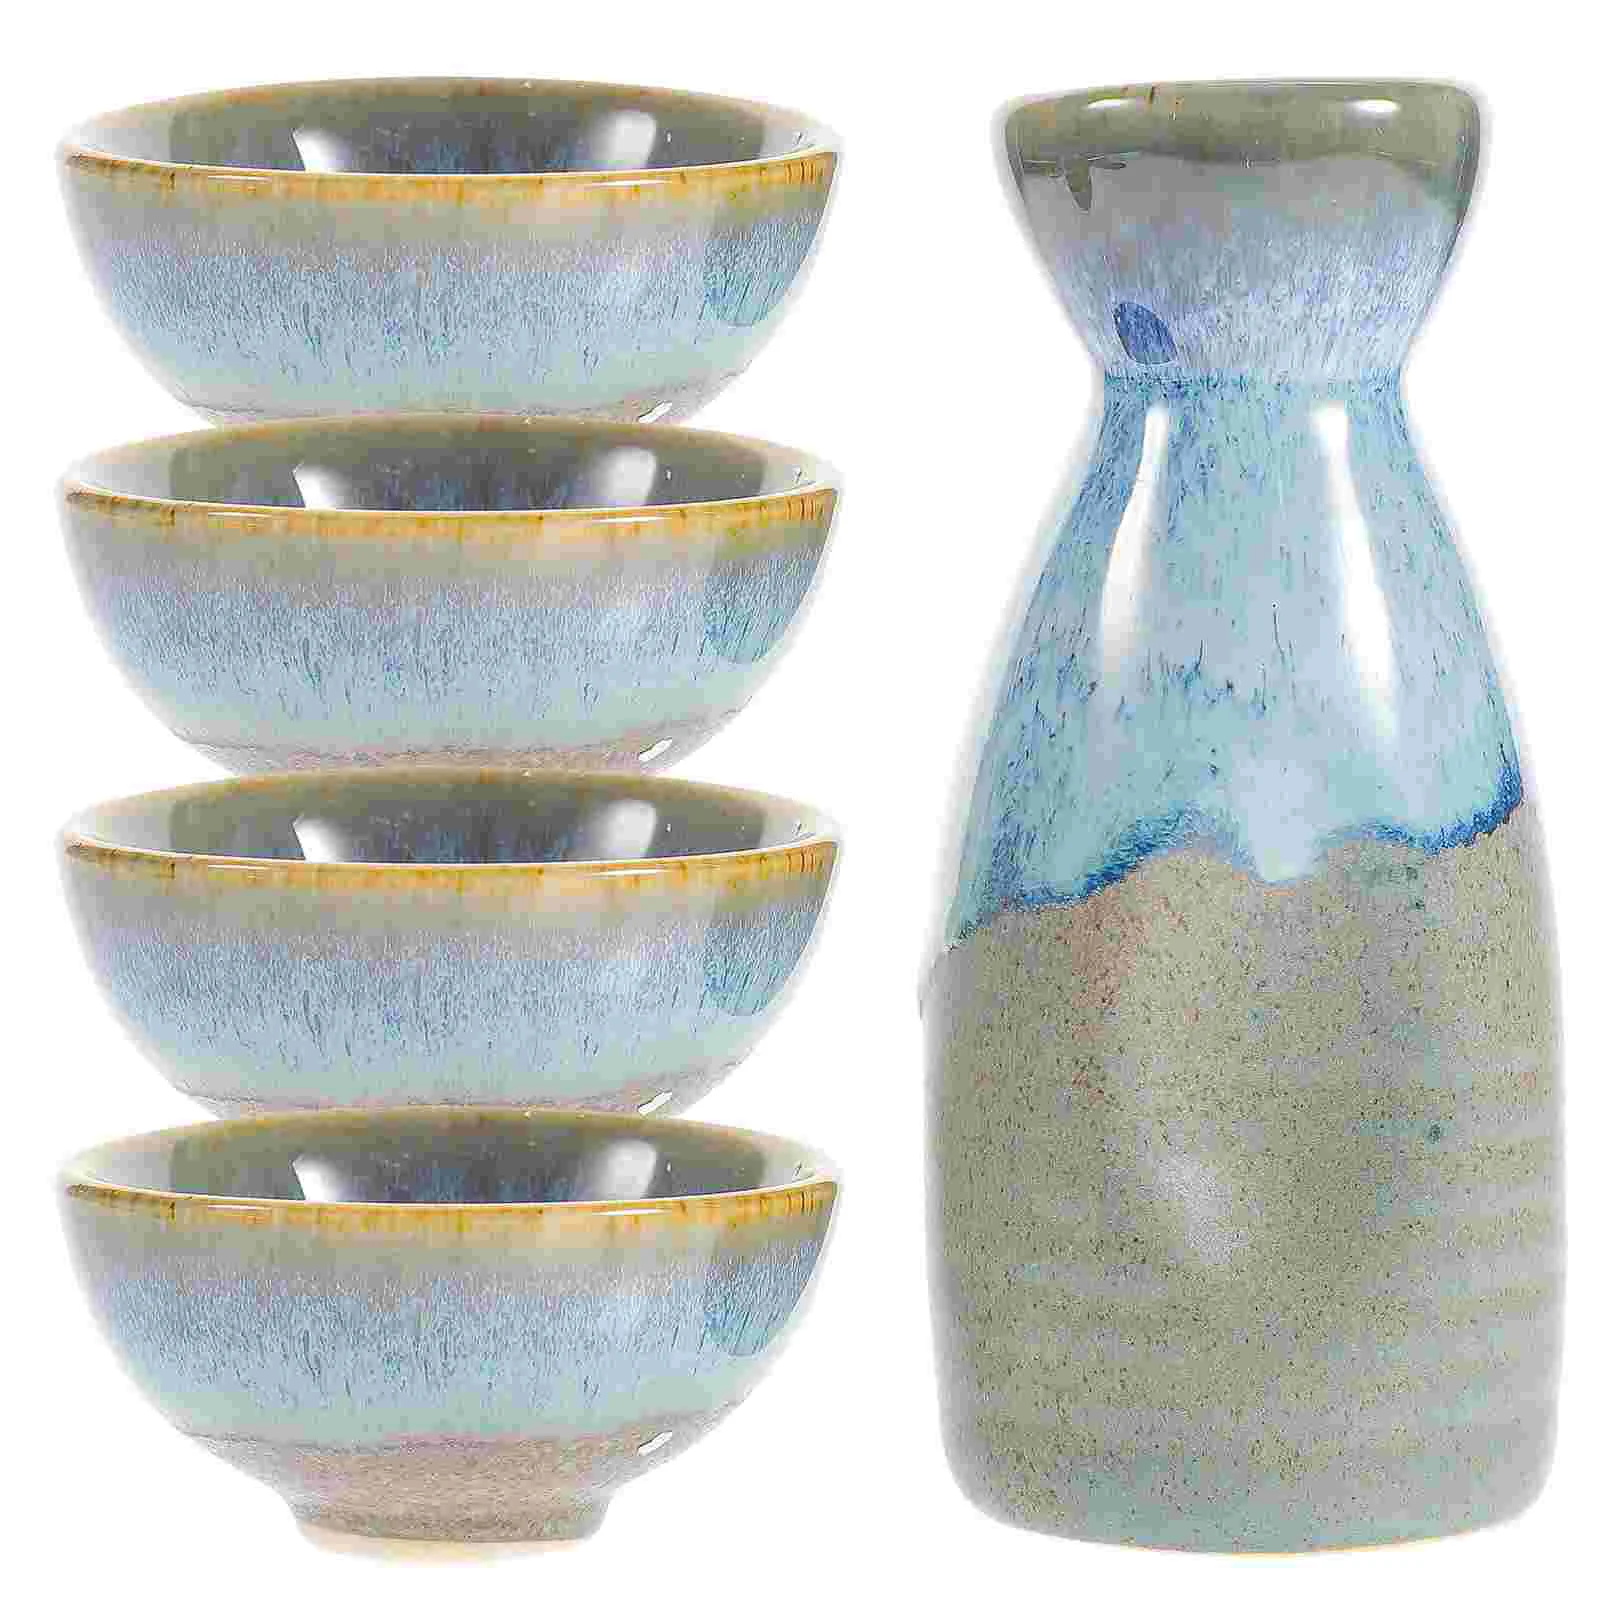 

Sake Set Japanese Ceramic Cups Cup Bottle Traditional Pot Saki Serving Tea Porcelain Decanter Japan Hot Cold Mini Sets Set